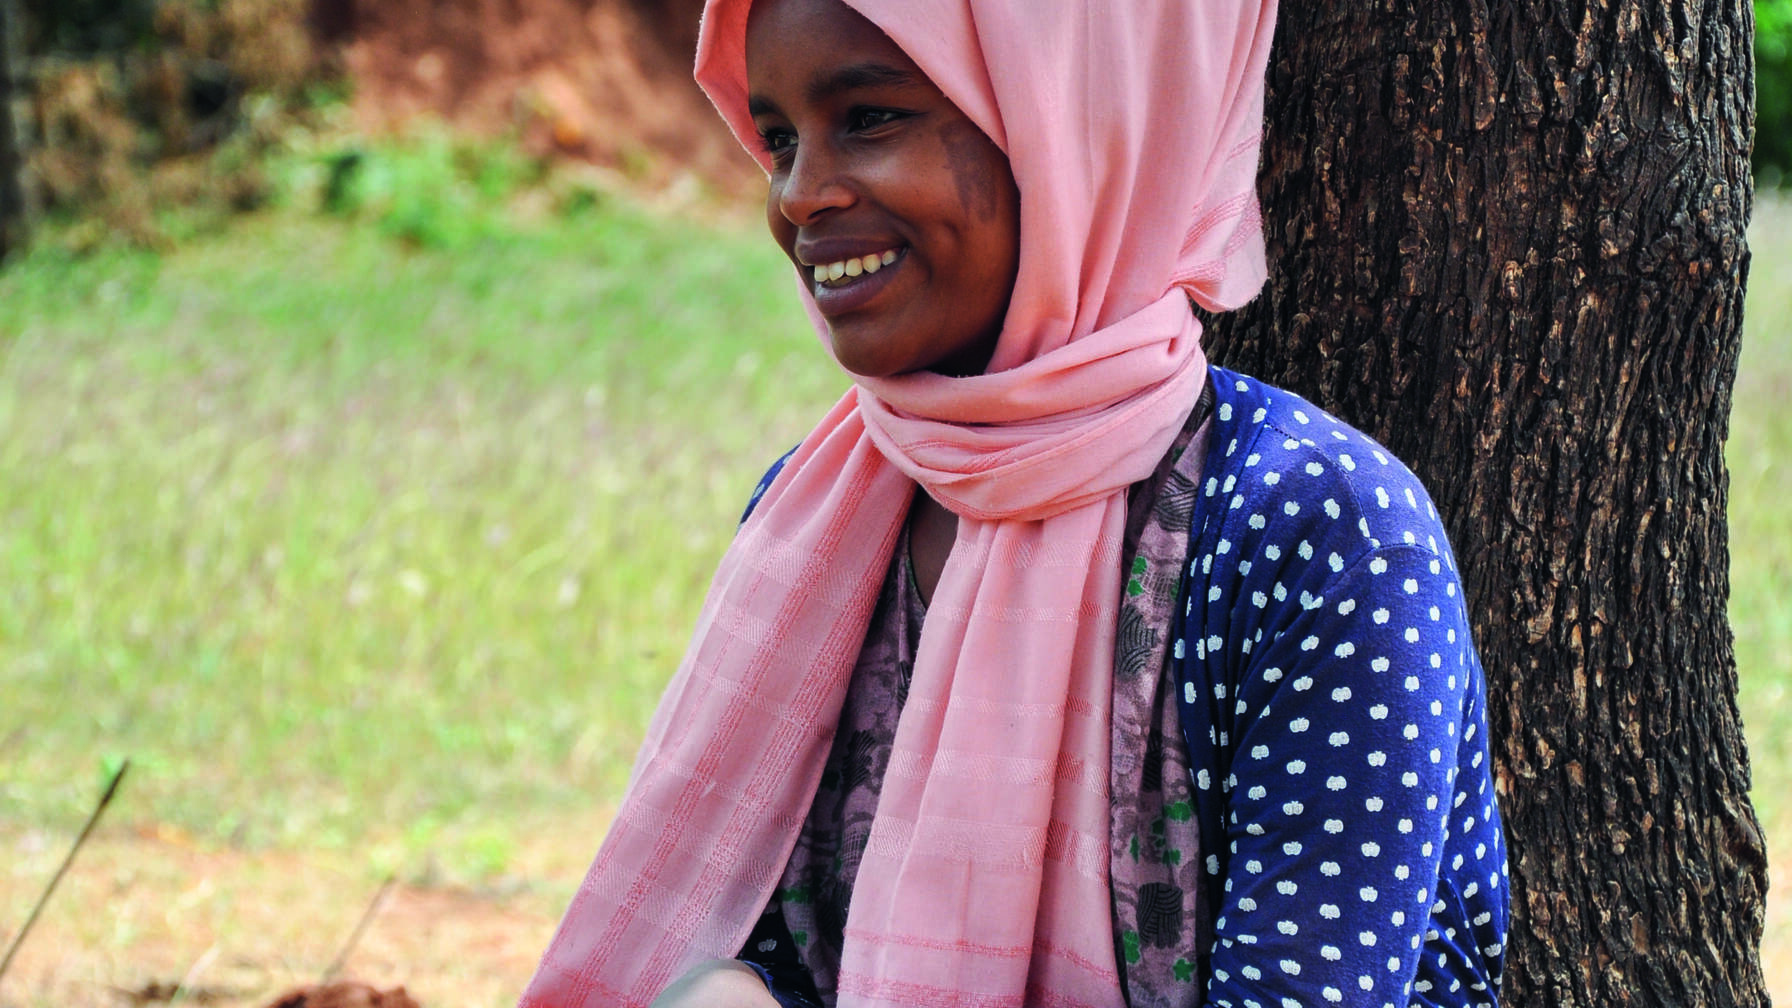 L’eau pour tous: Merdiya (16 ans) et ses camarades de classe apprennent par le jeu de bonnes pratiques d’hygiène et améliorent ainsi leur état de santé. 